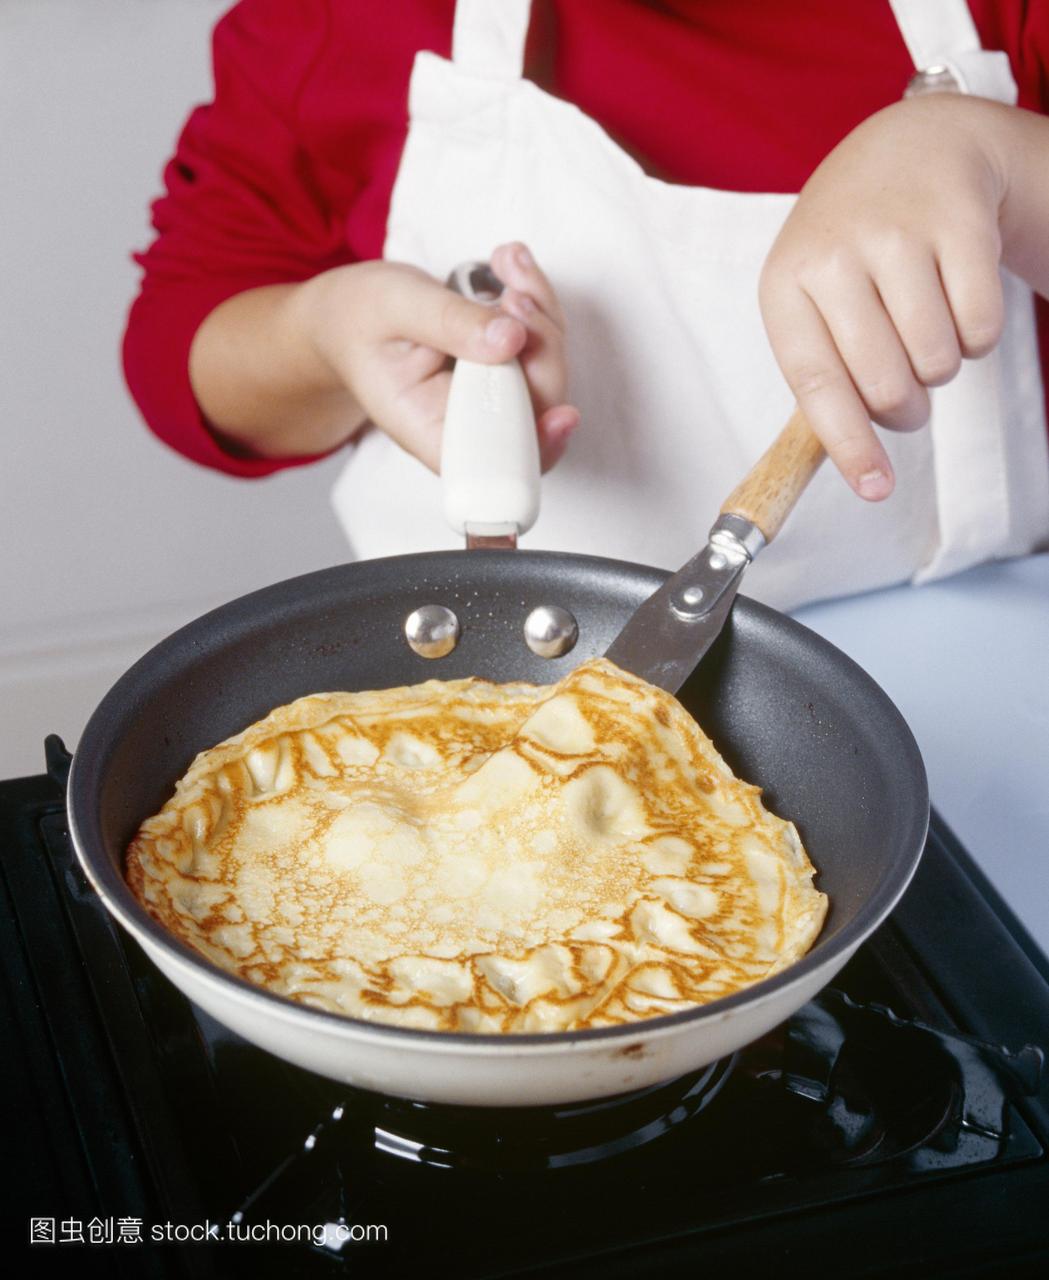 做煎饼。图片3的3。孩子在煎锅里烹饪英语煎